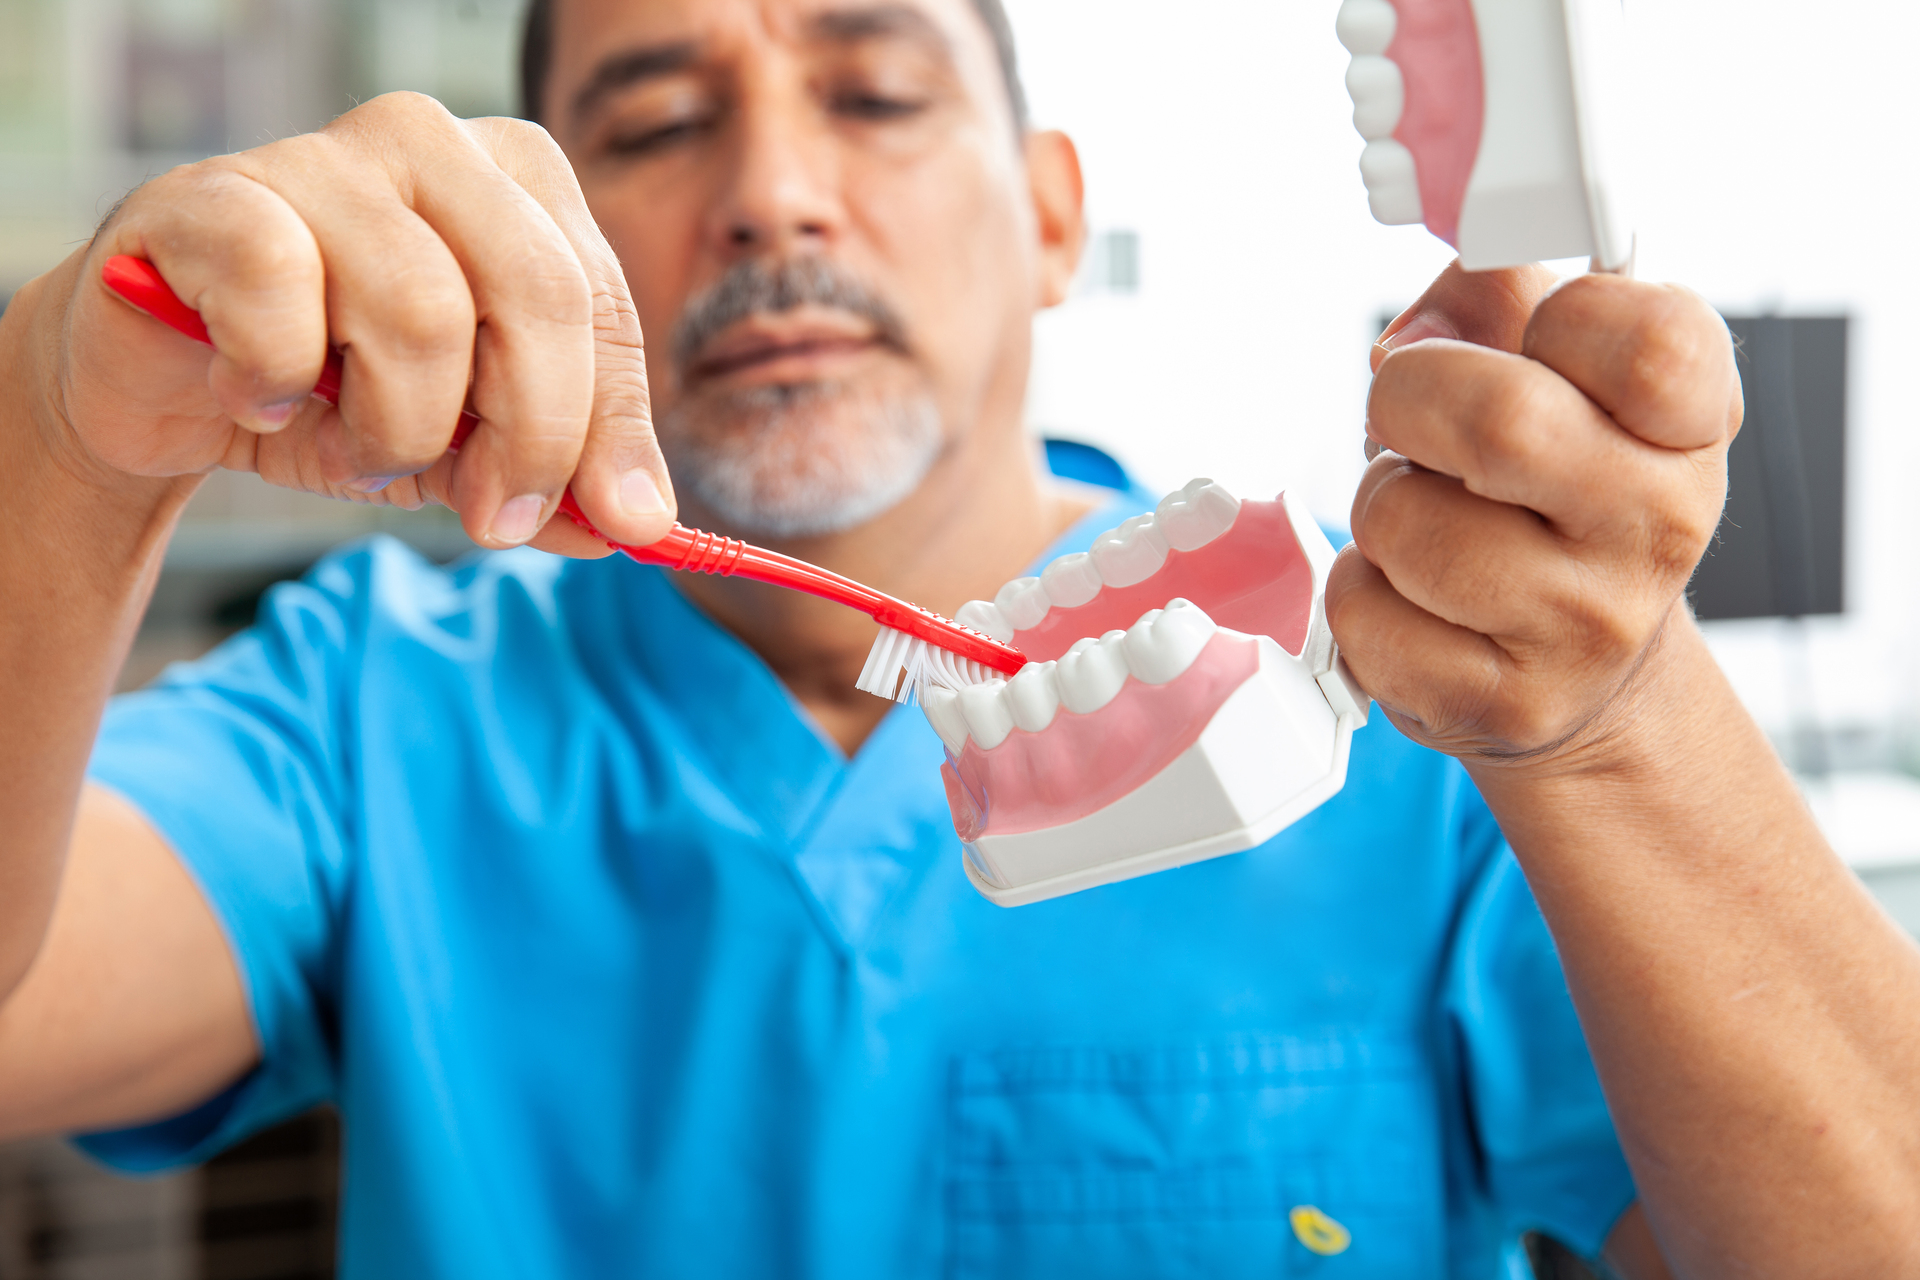 Na tym obrazku możemy zobaczyć dentystę, który dokładnie prezentuje, jak prawidłowo myć zęby. Jest to ważna część edukacji pacjentów na temat higieny jamy ustnej.Dentysta jest profesjonalistą w dziedzinie zdrowia jamy ustnej i jest odpowiedzialny za promowanie prawidłowych praktyk higieny jamy ustnej. Na obrazku widać, że dentysta używa modelu zębów, aby zobrazować technikę szczotkowania zębów